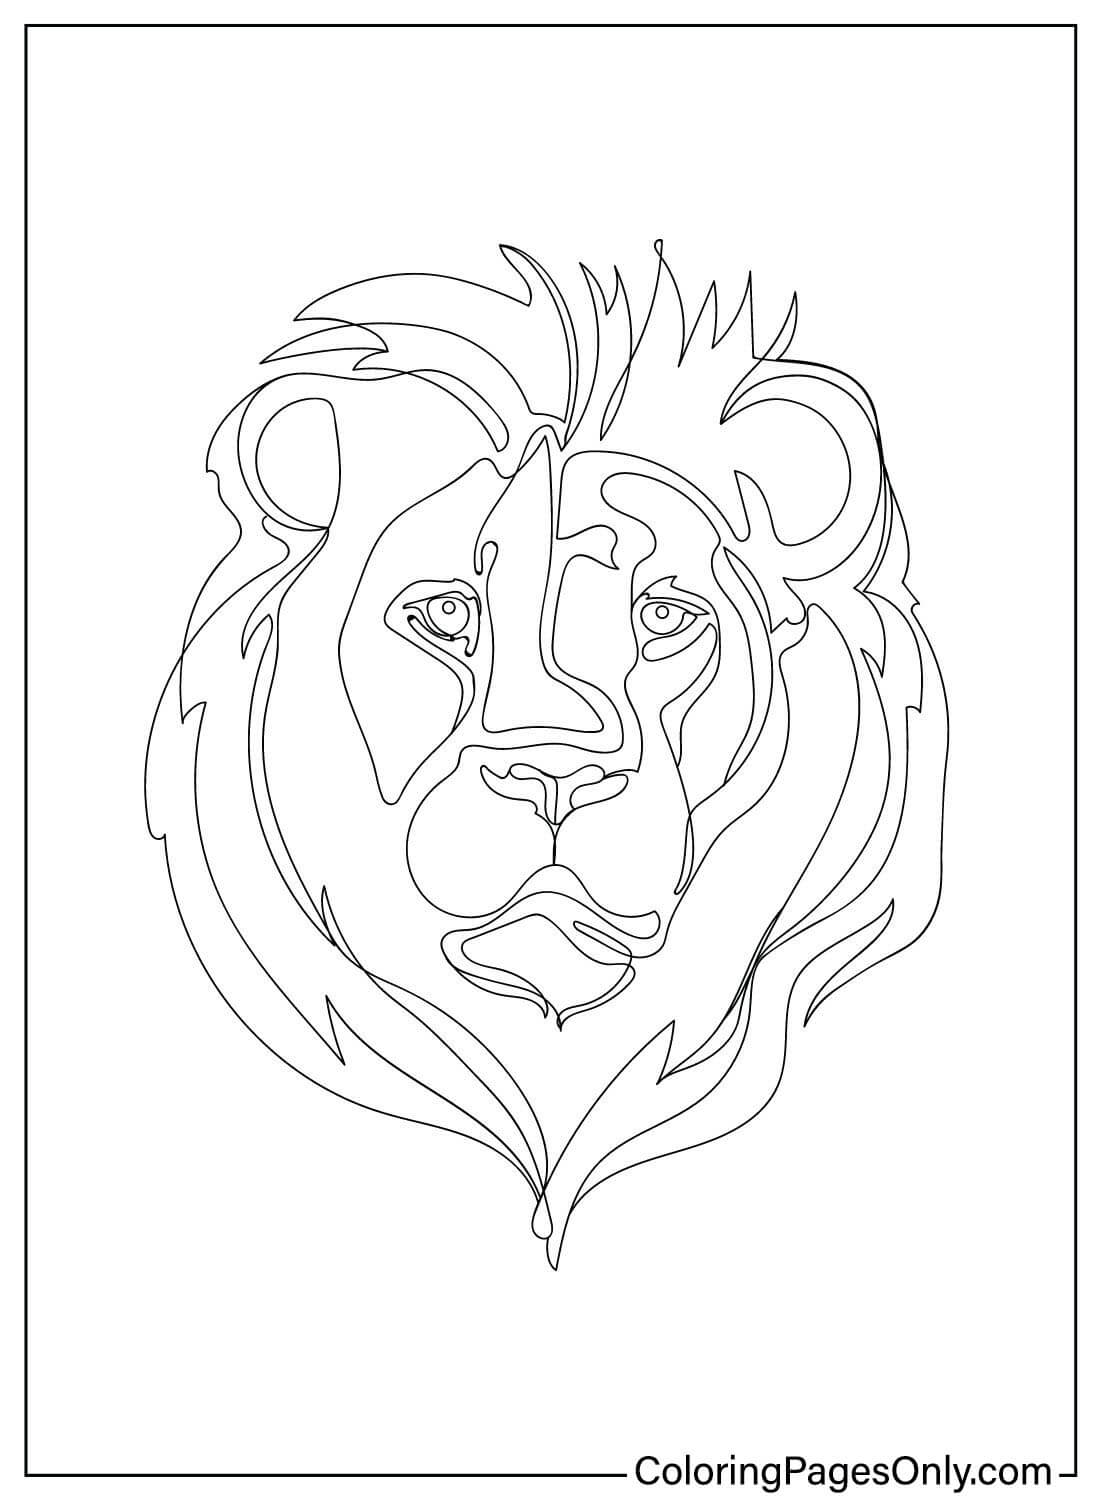 Página para colorir abstrata do leão do leão